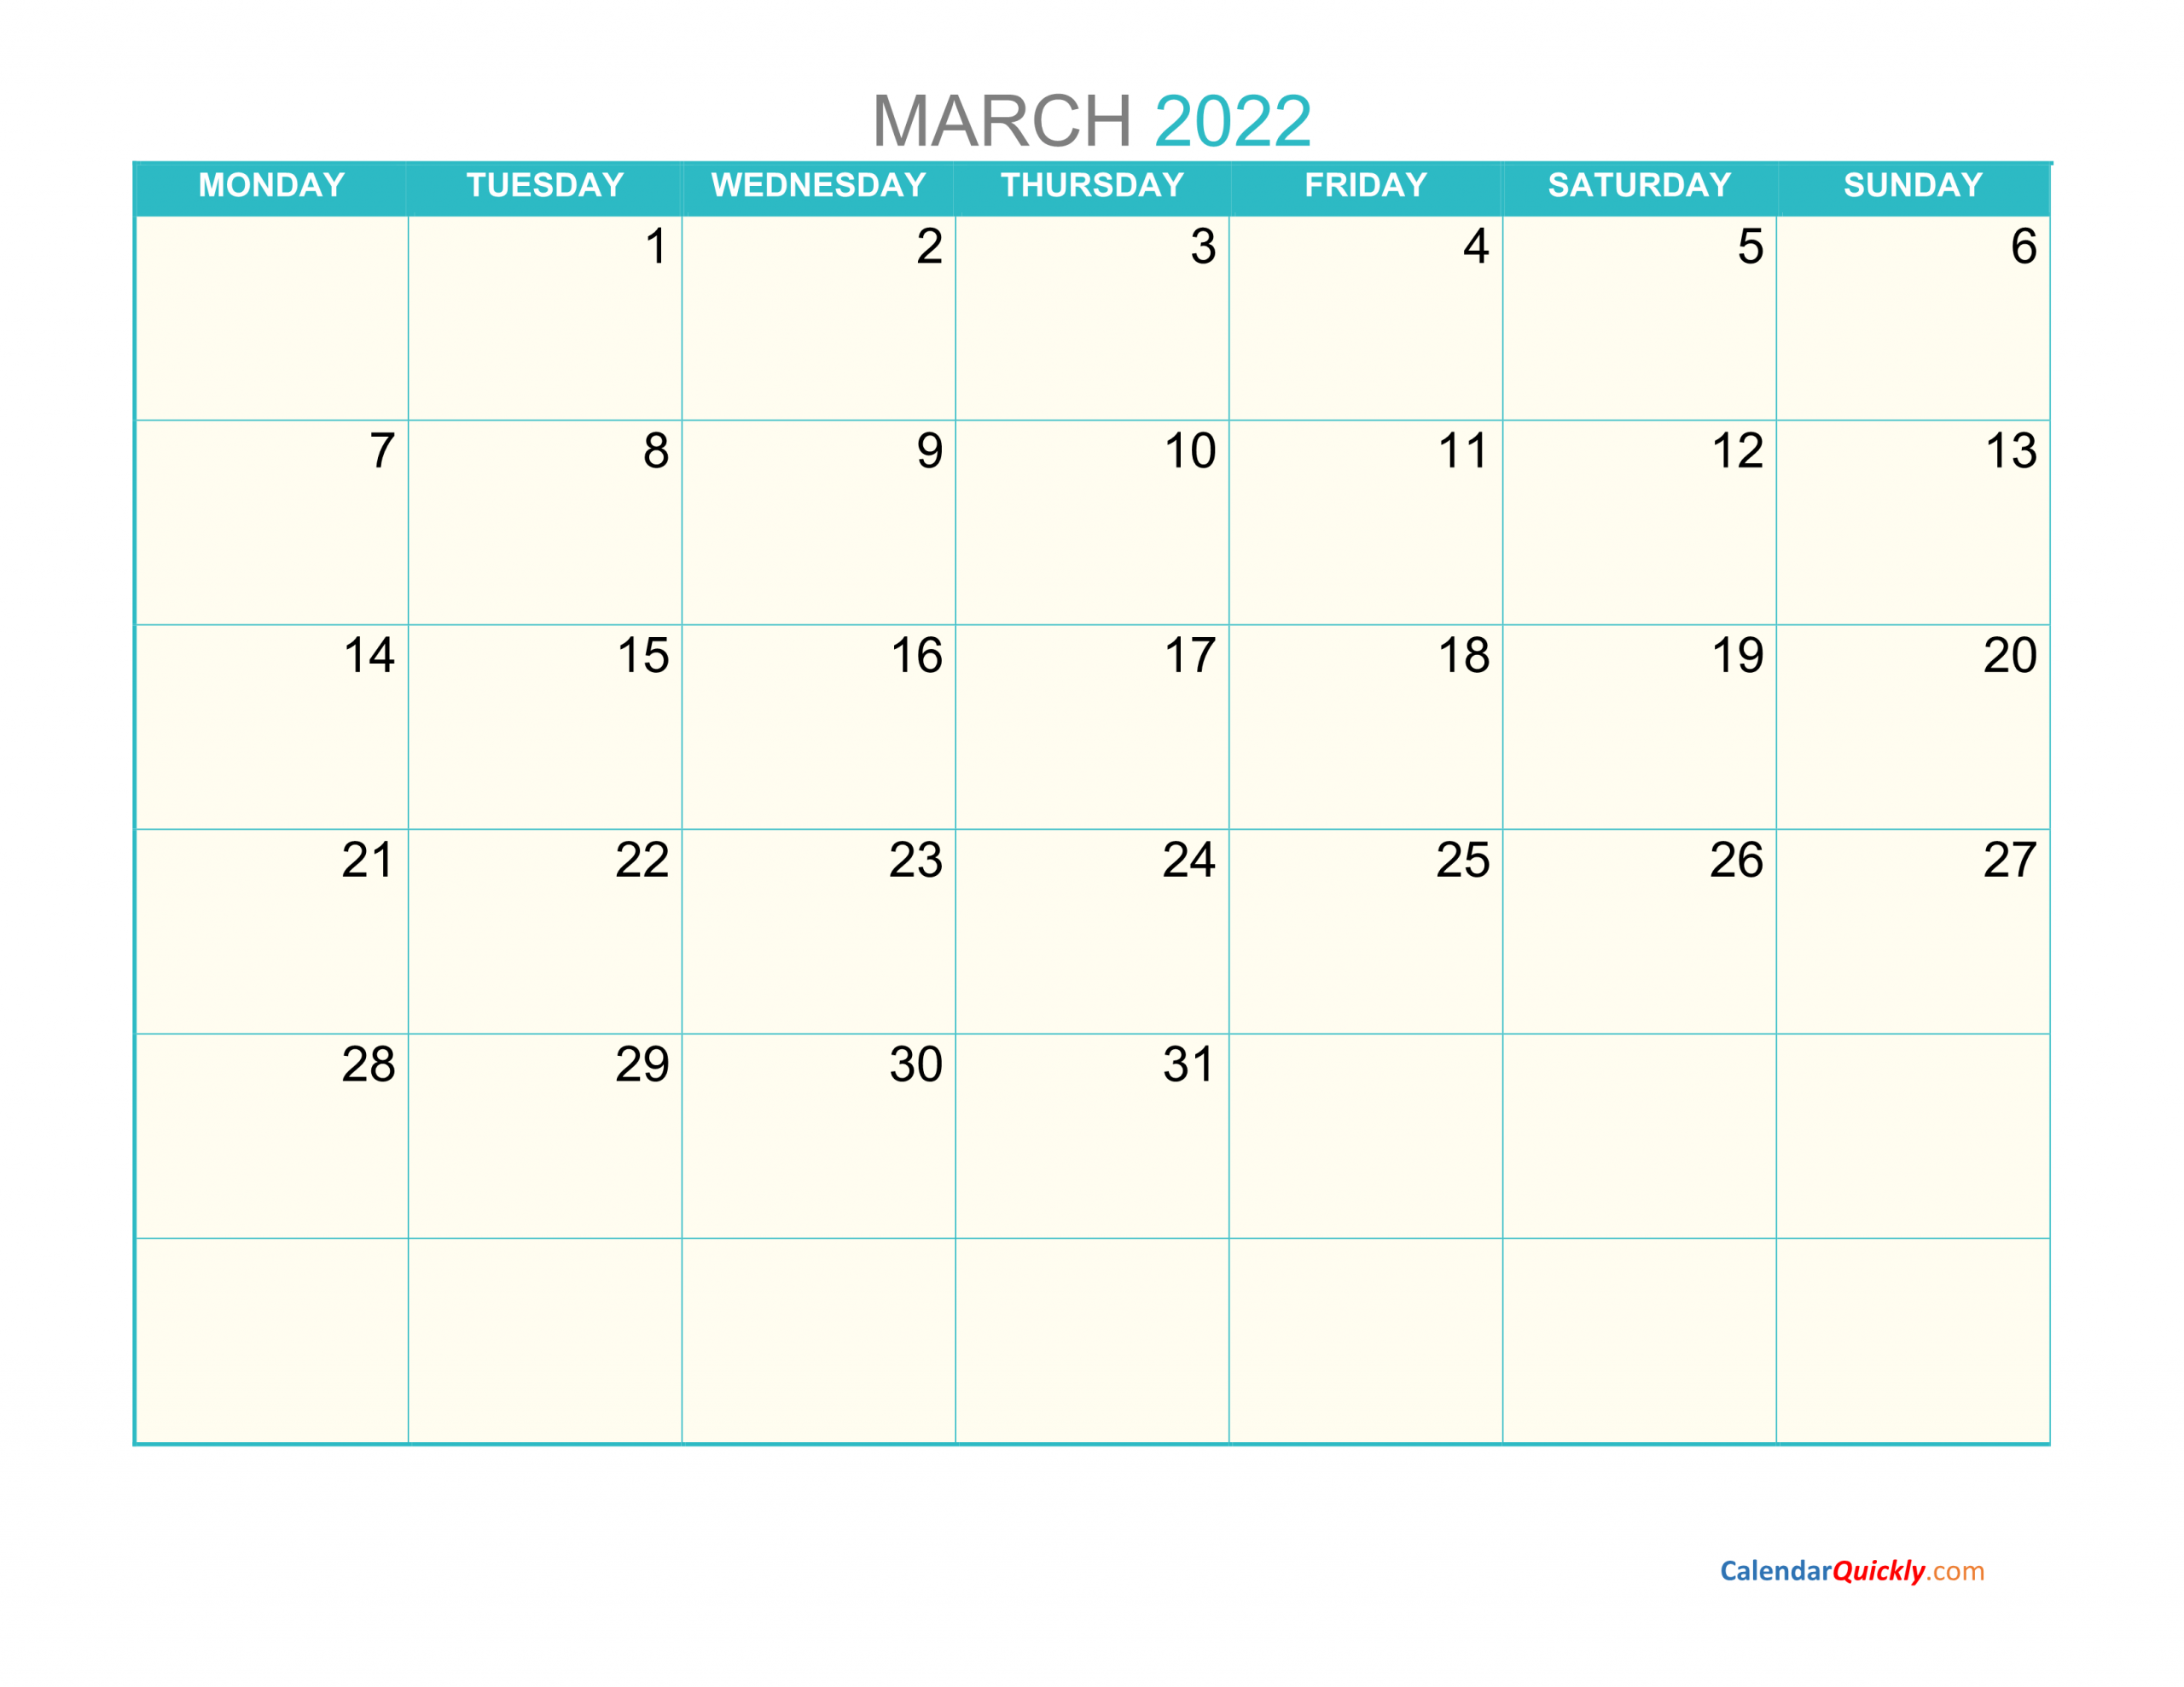 March Monday 2022 Calendar Printable | Calendar Quickly